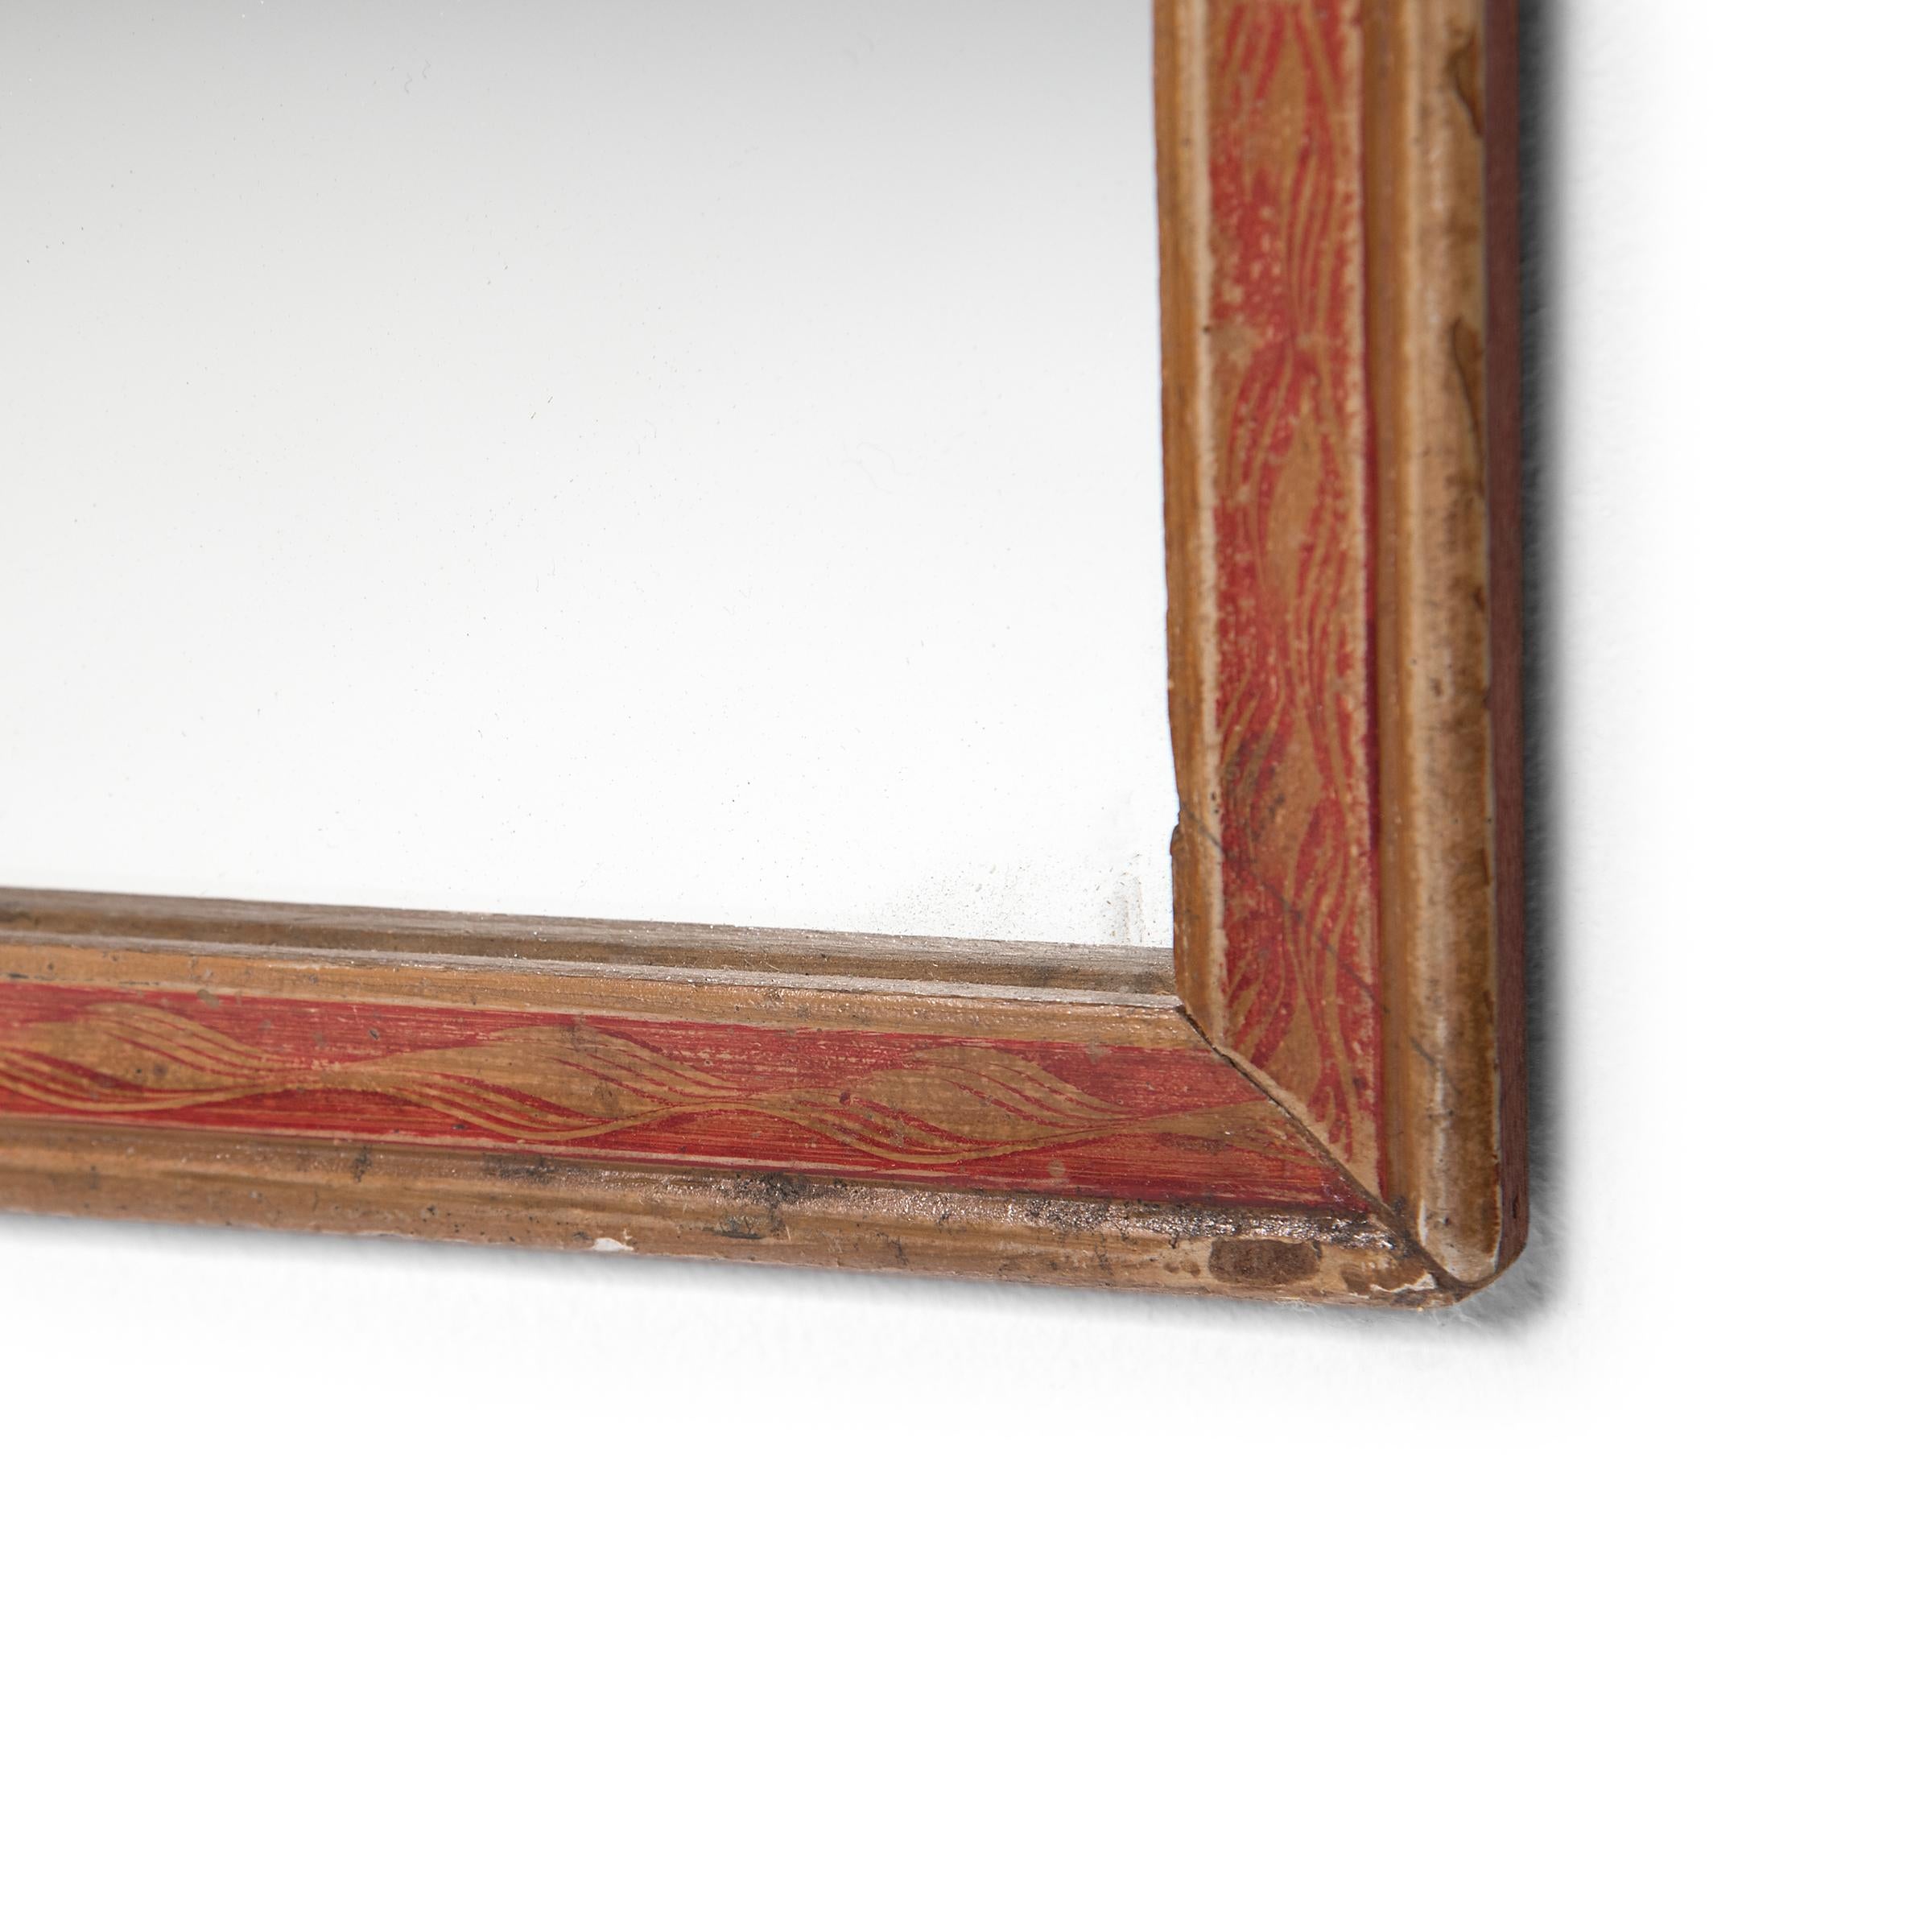 Der bemalte Rahmen dieses Wandspiegels grenzte ursprünglich an eine Hinterglasmalerei, eine traditionelle Kunst, bei der der Künstler ein Bild spiegelverkehrt malen musste, beginnend mit den Details. Der Rahmen, der nun einen neuen Spiegel